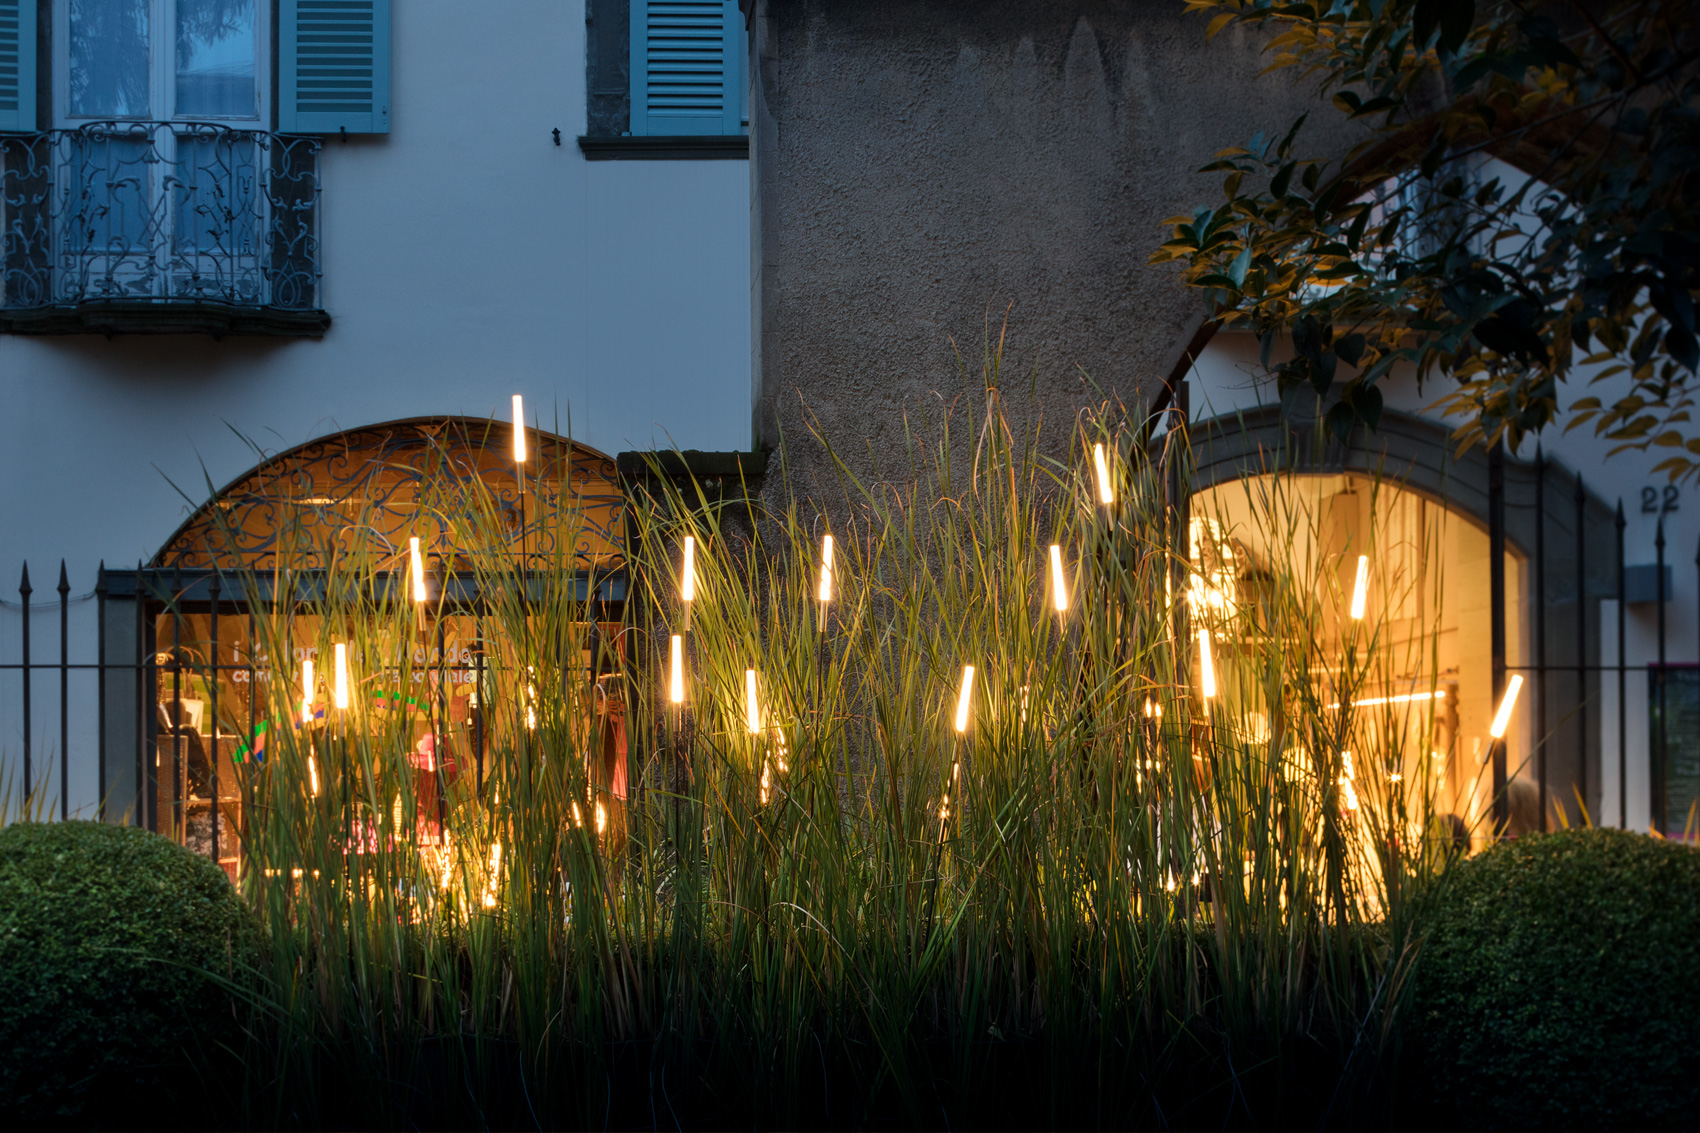 Catellani & Smith „Lighting Nature“ for I Maestri del Paesaggio